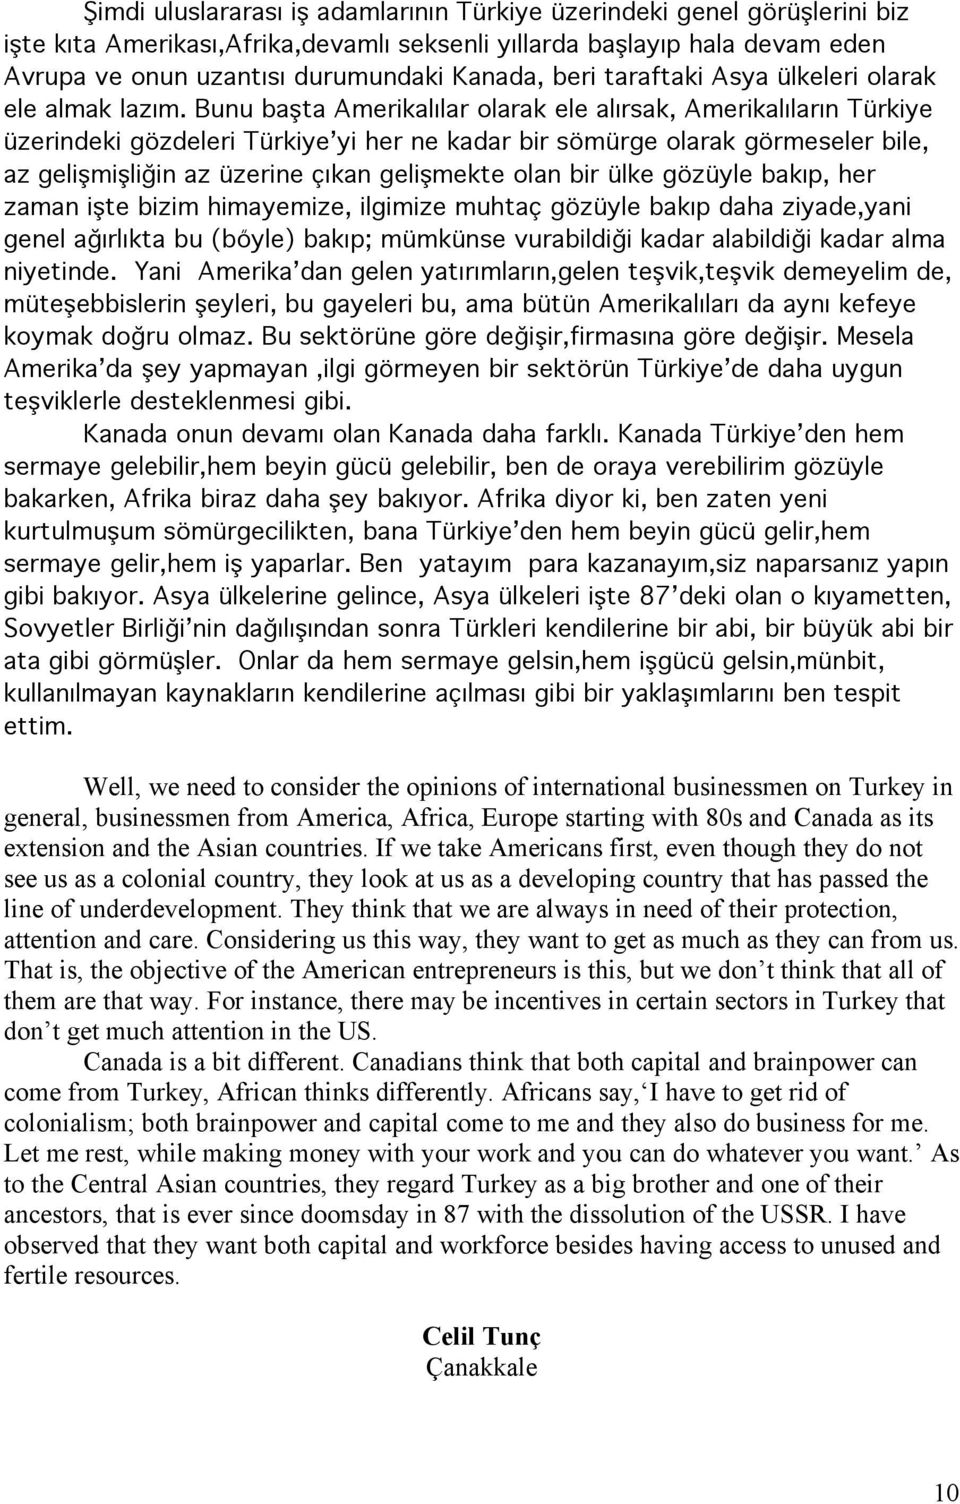 Bunu başta Amerikalılar olarak ele alırsak, Amerikalıların Türkiye üzerindeki gözdeleri Türkiye yi her ne kadar bir sömürge olarak görmeseler bile, az gelişmişliğin az üzerine çıkan gelişmekte olan